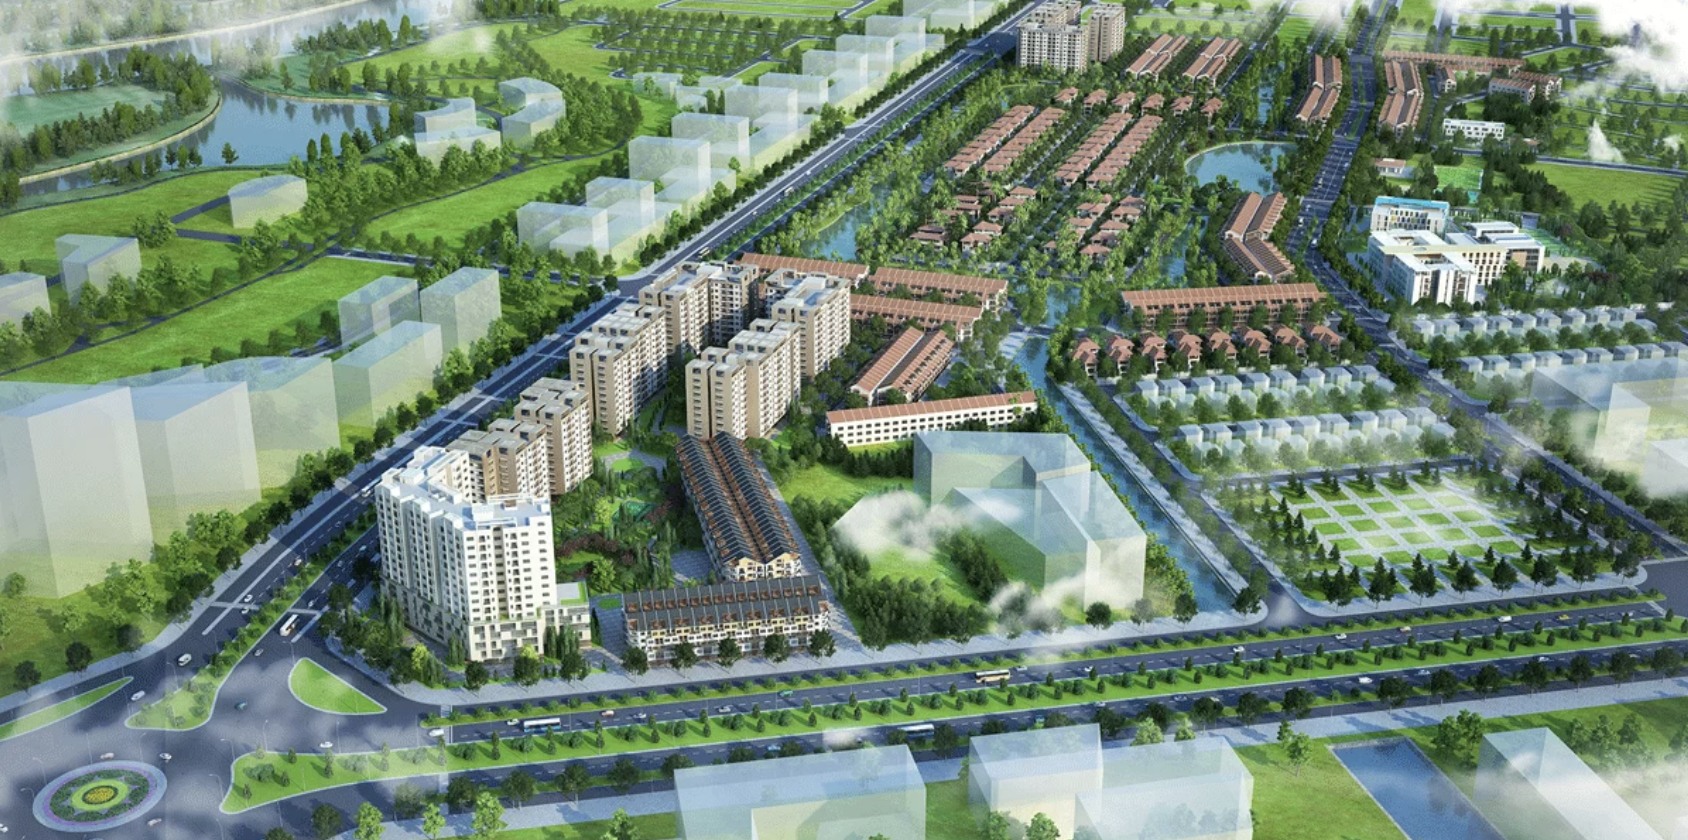 Bất động sản - Taseco nhận bàn giao 7,3ha đất sạch làm khu đô thị nghìn tỷ tại Thanh Hoá